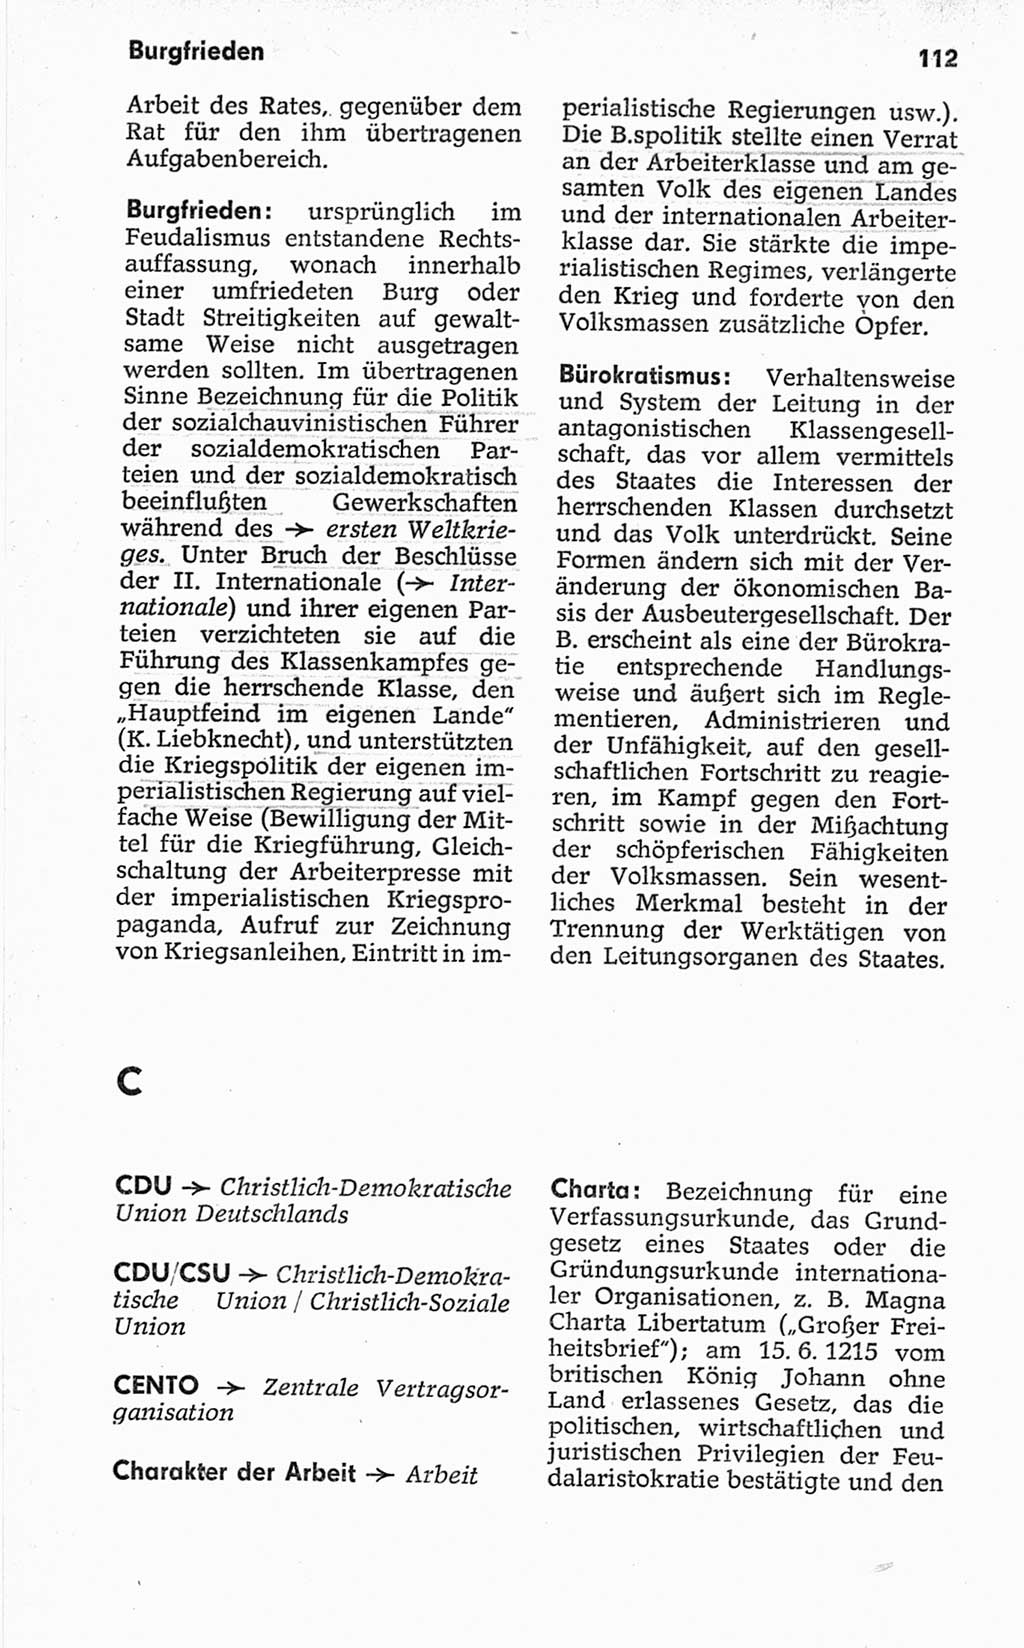 Kleines politisches Wörterbuch [Deutsche Demokratische Republik (DDR)] 1967, Seite 112 (Kl. pol. Wb. DDR 1967, S. 112)